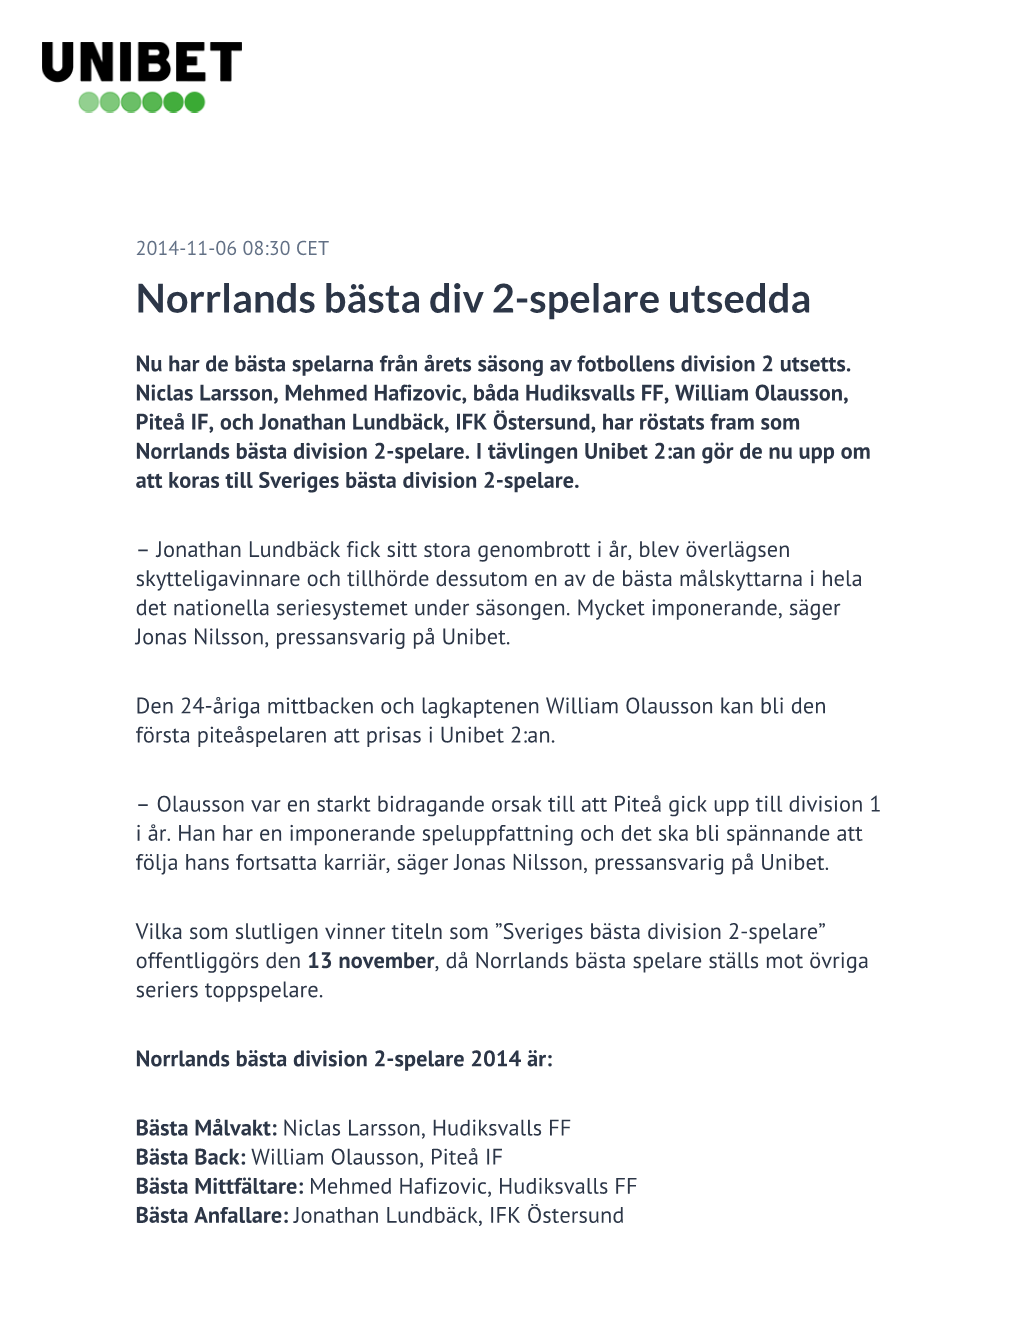 Norrlands Bästa Div 2-Spelare Utsedda